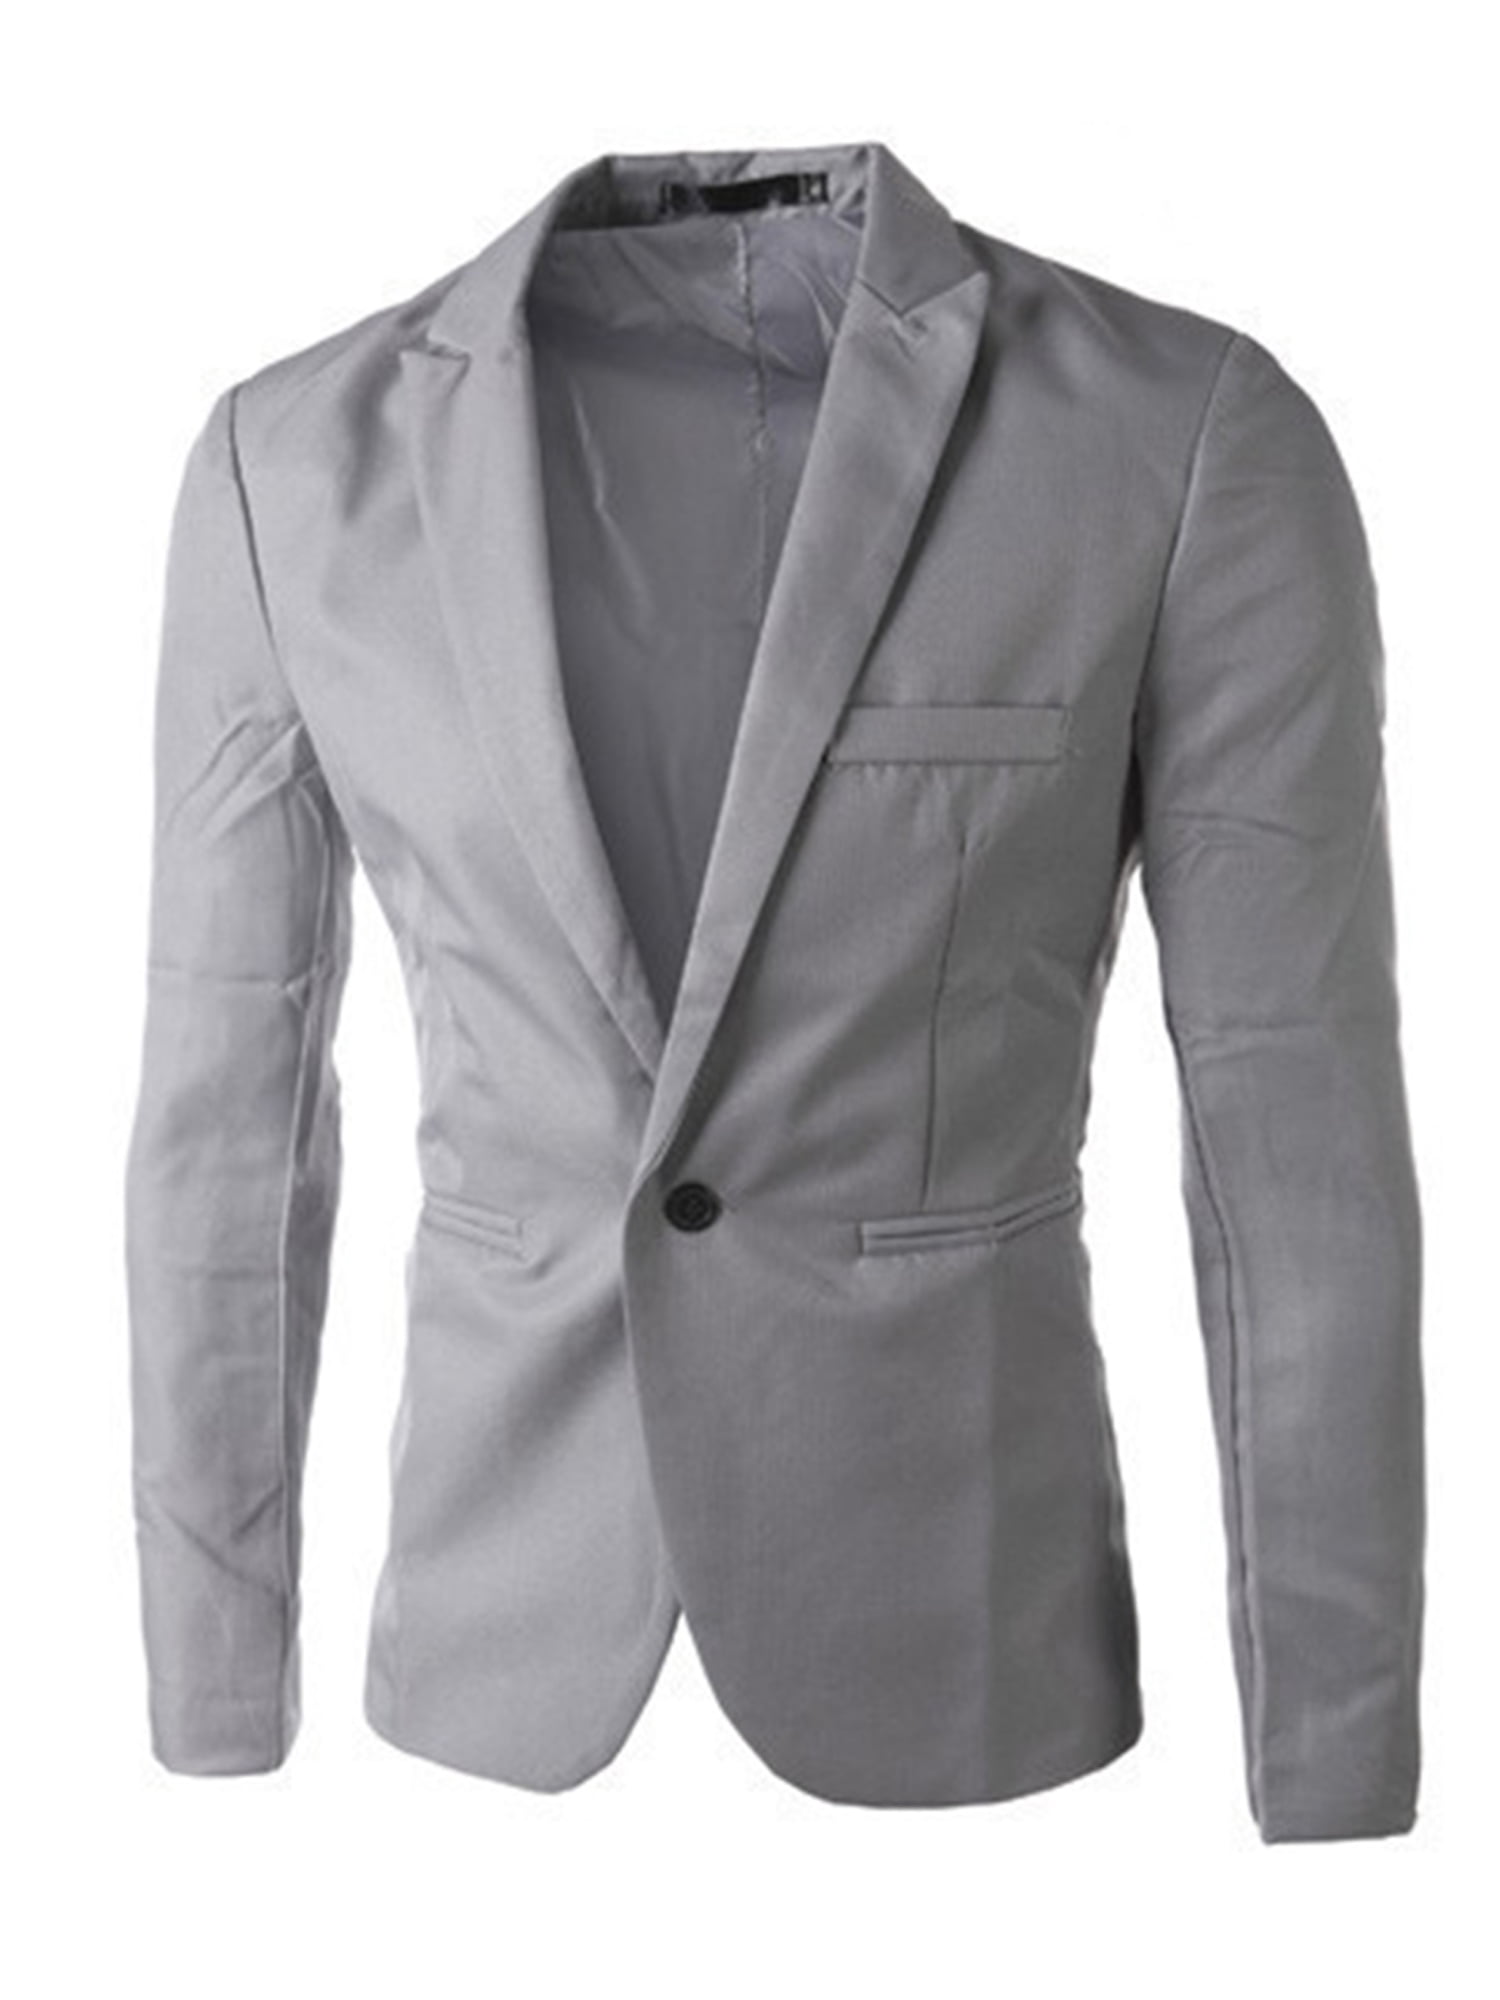 Lallc - Men's Formal Suit Blazer Coat Business Casual One Button Slim ...